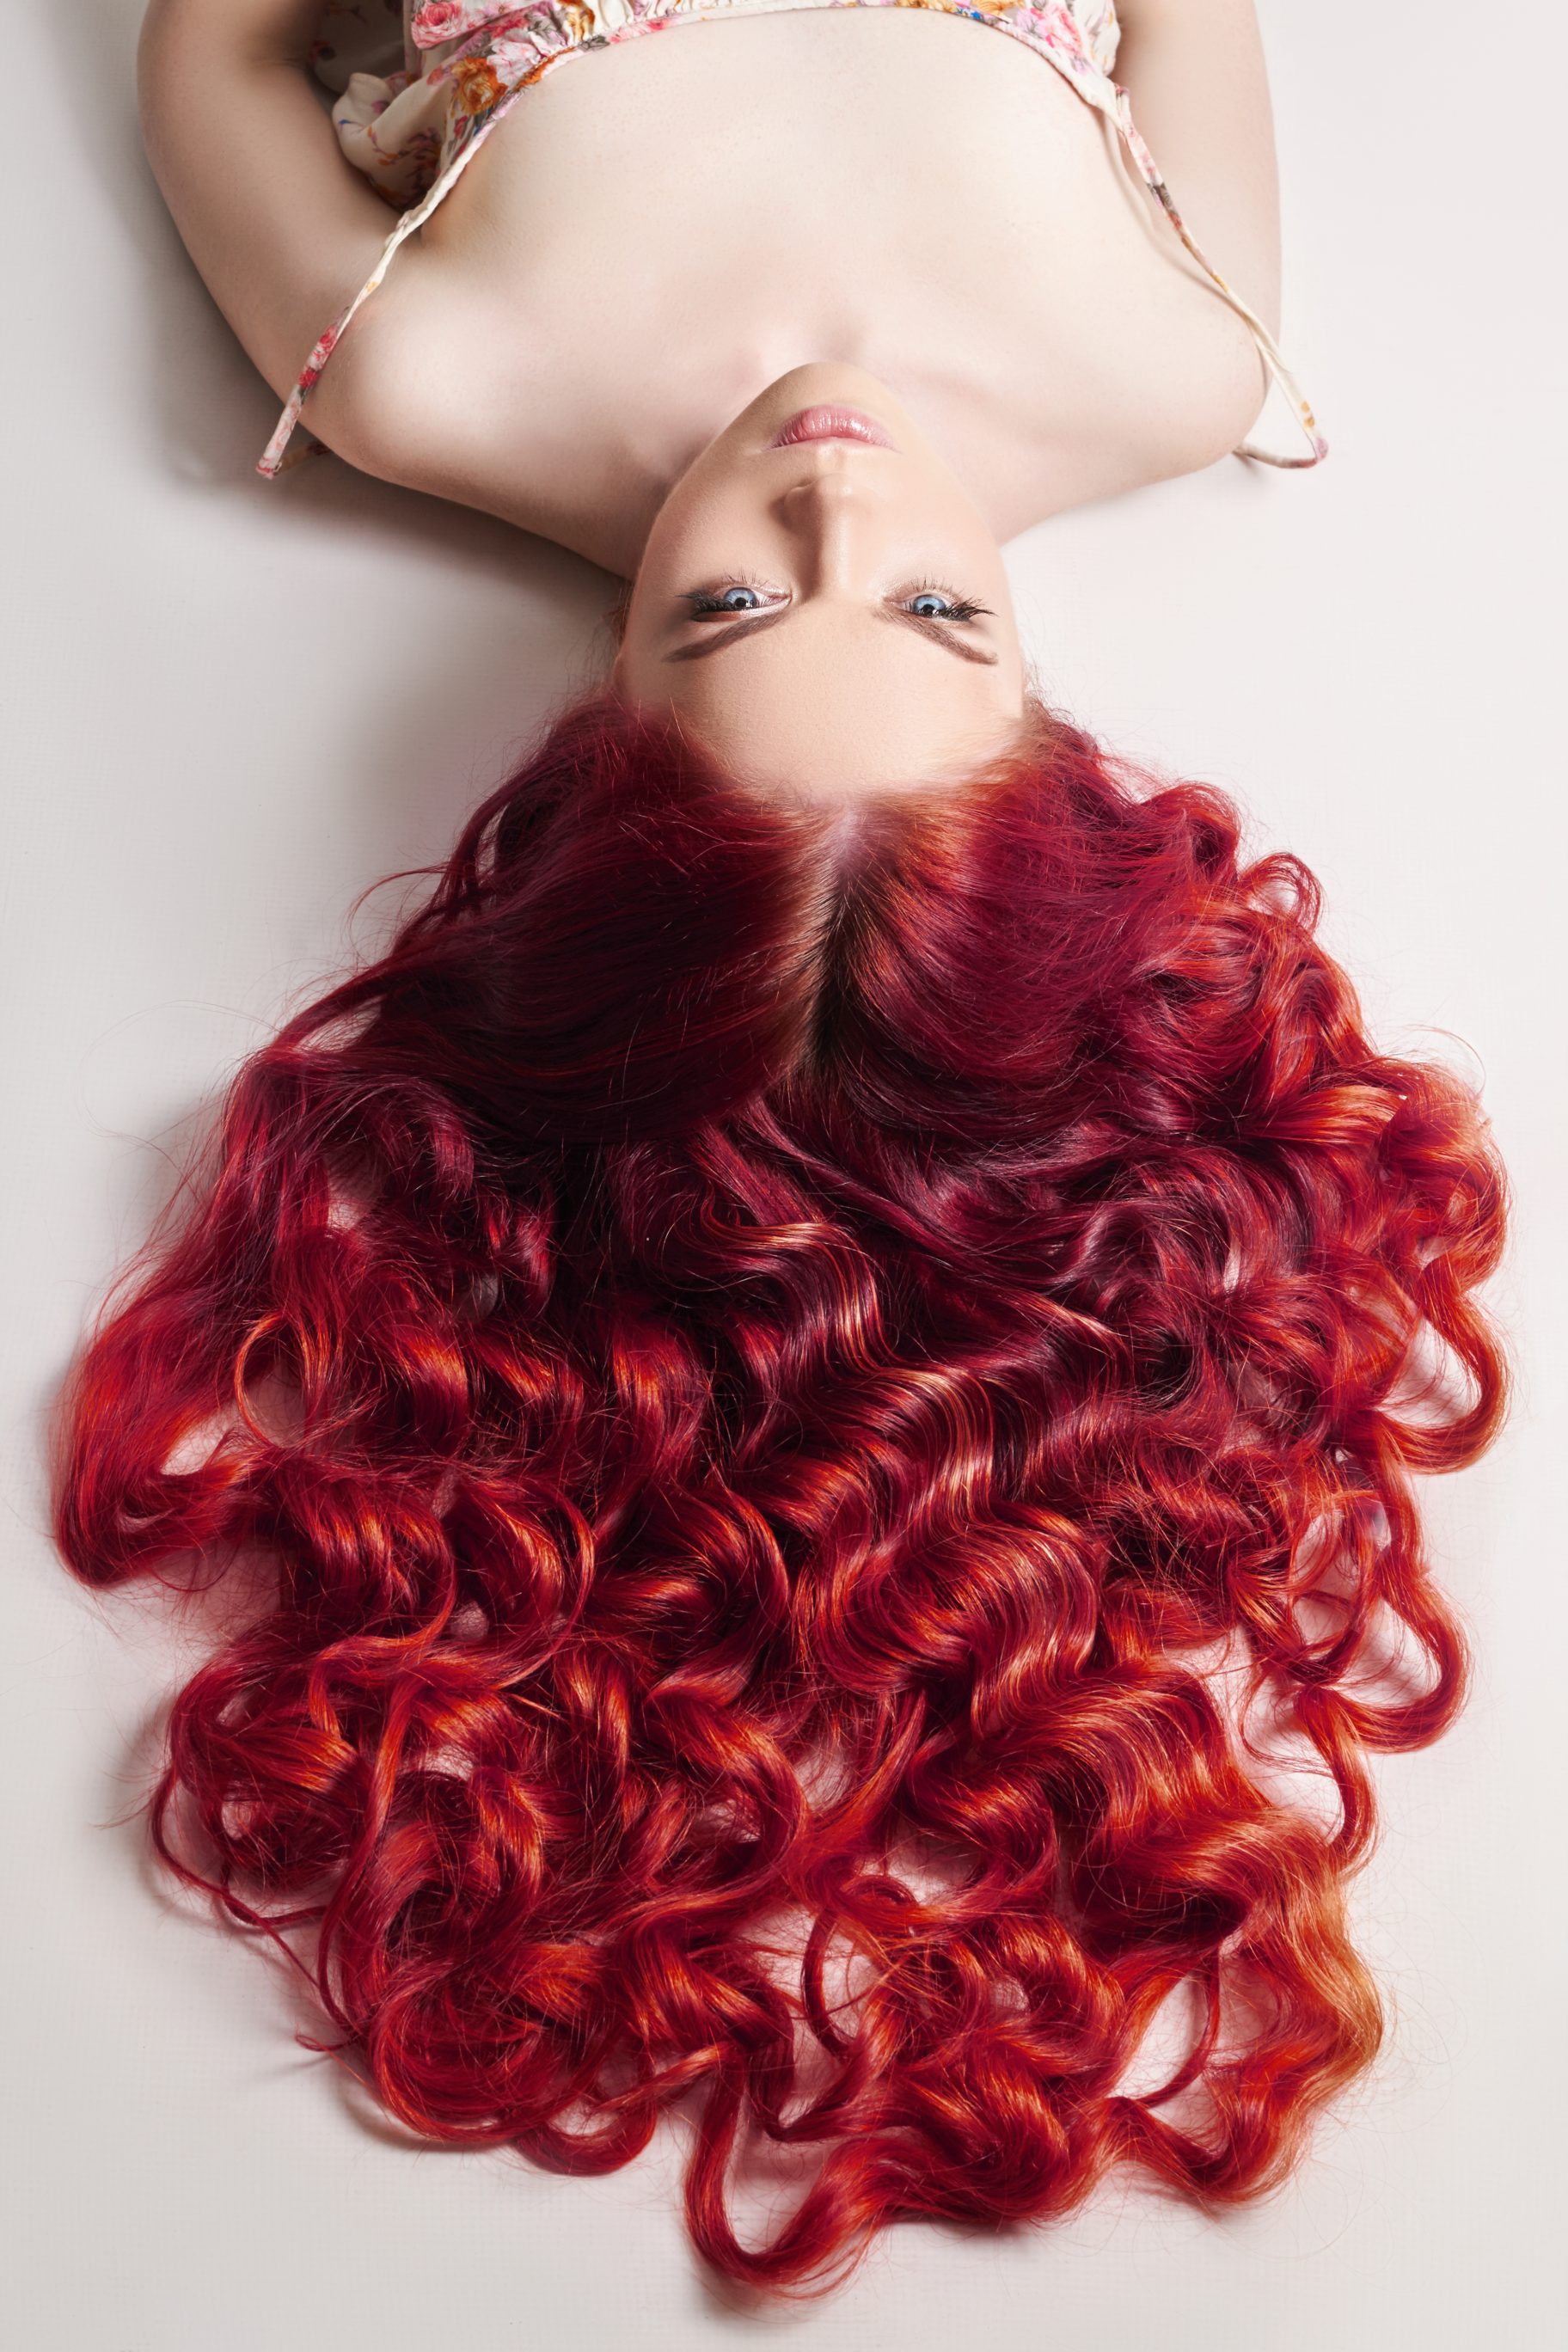 Ariel's hair color